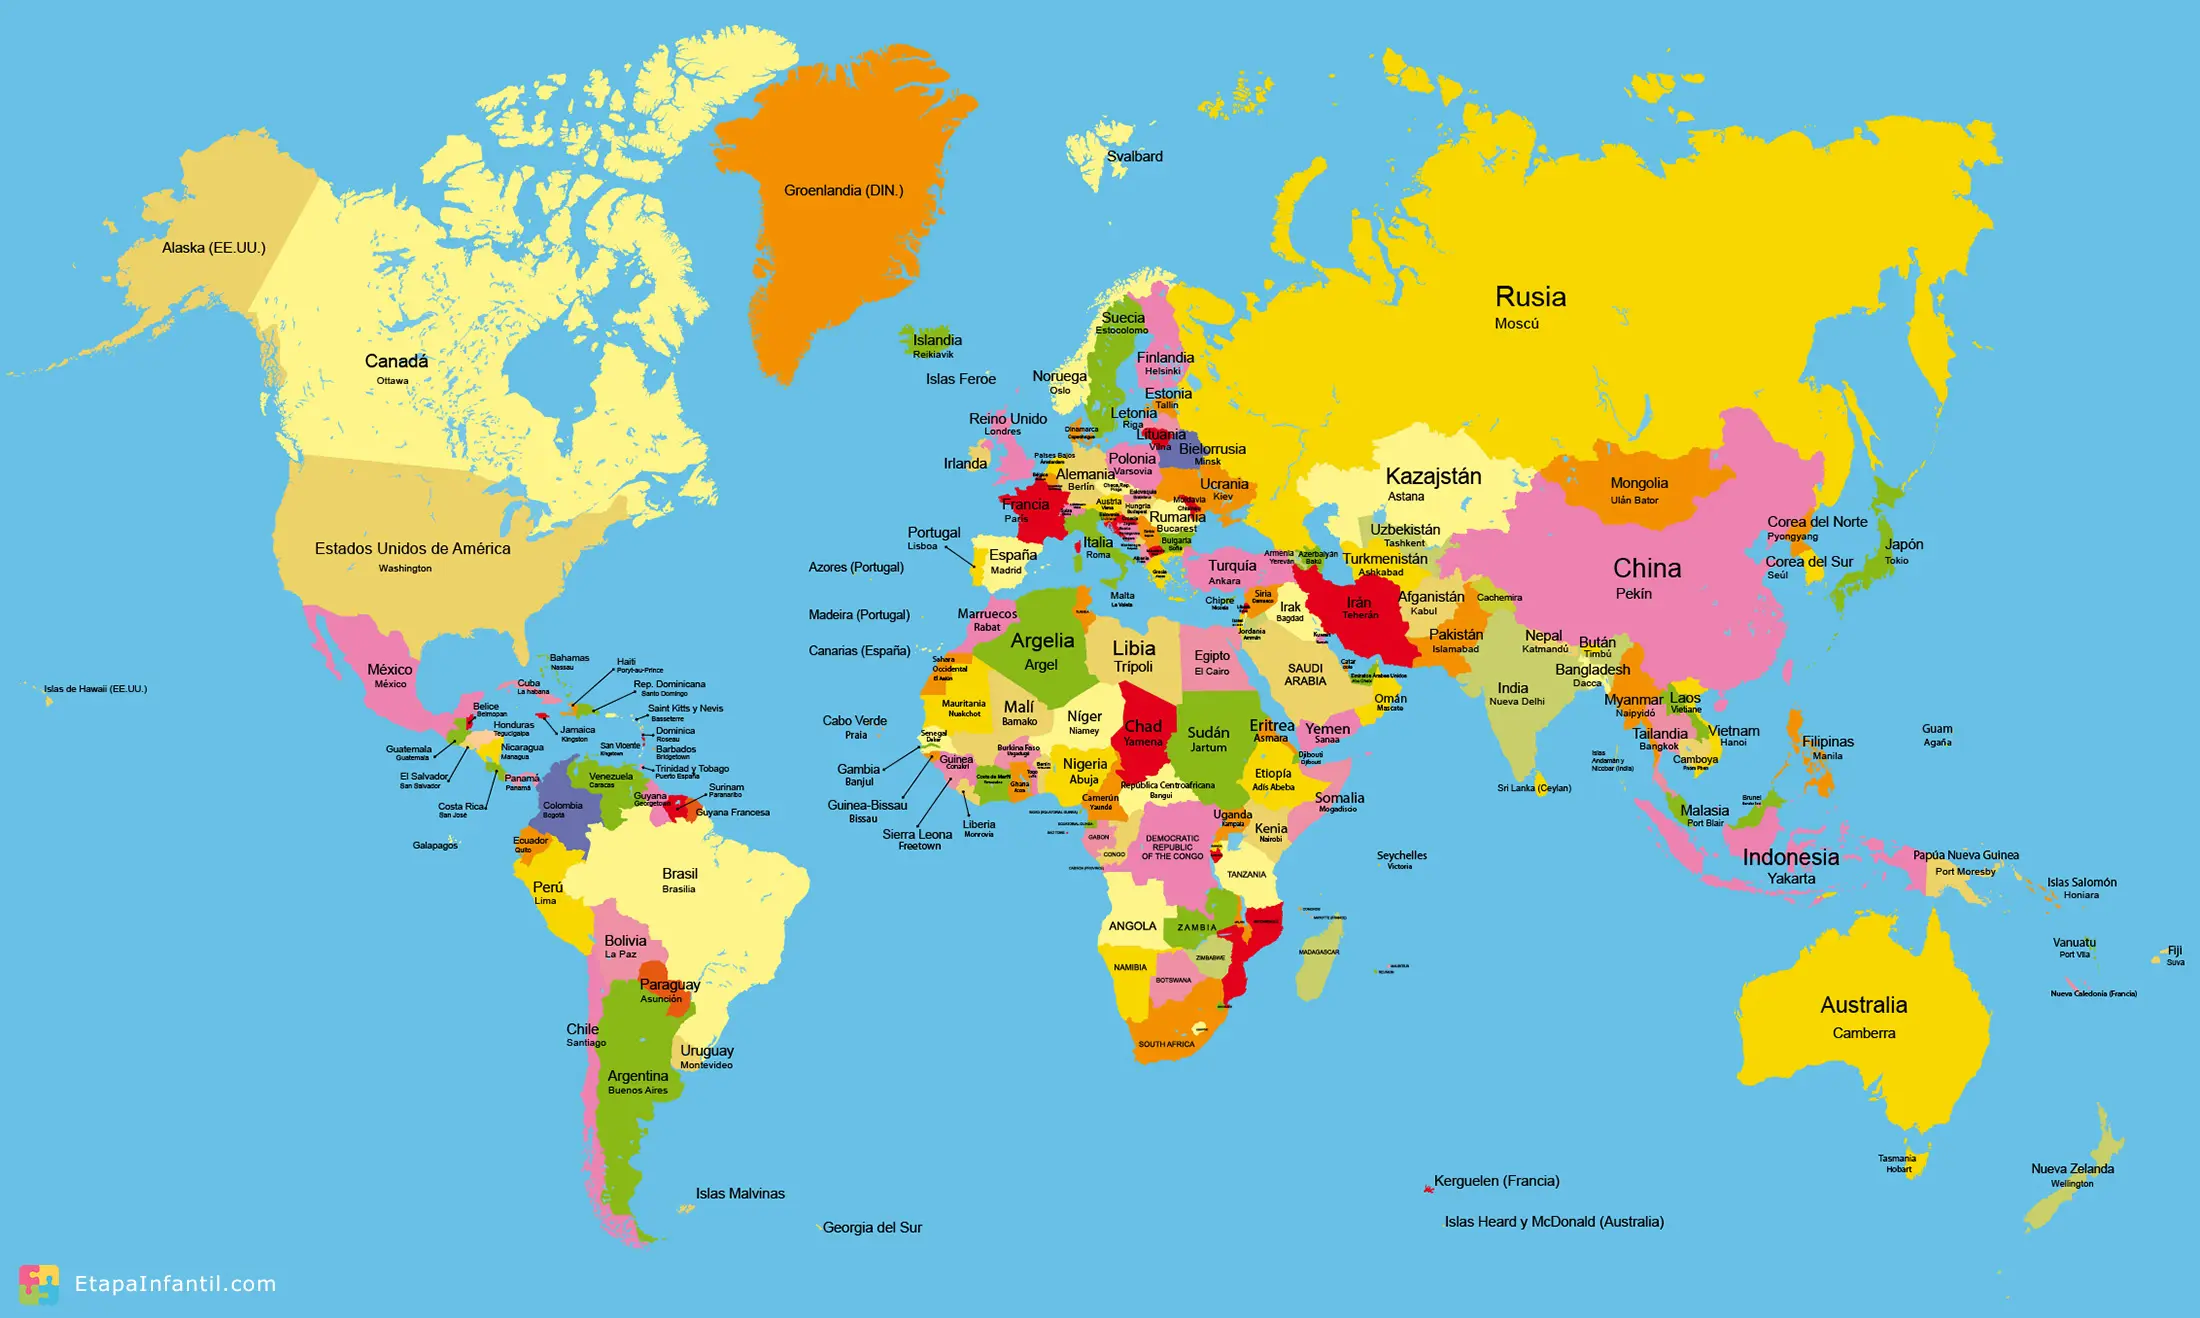 Imprimir Mapa Del Mundo Mapamundi: Los 7 mapas del mundo temáticos más utilizados - Etapa Infantil